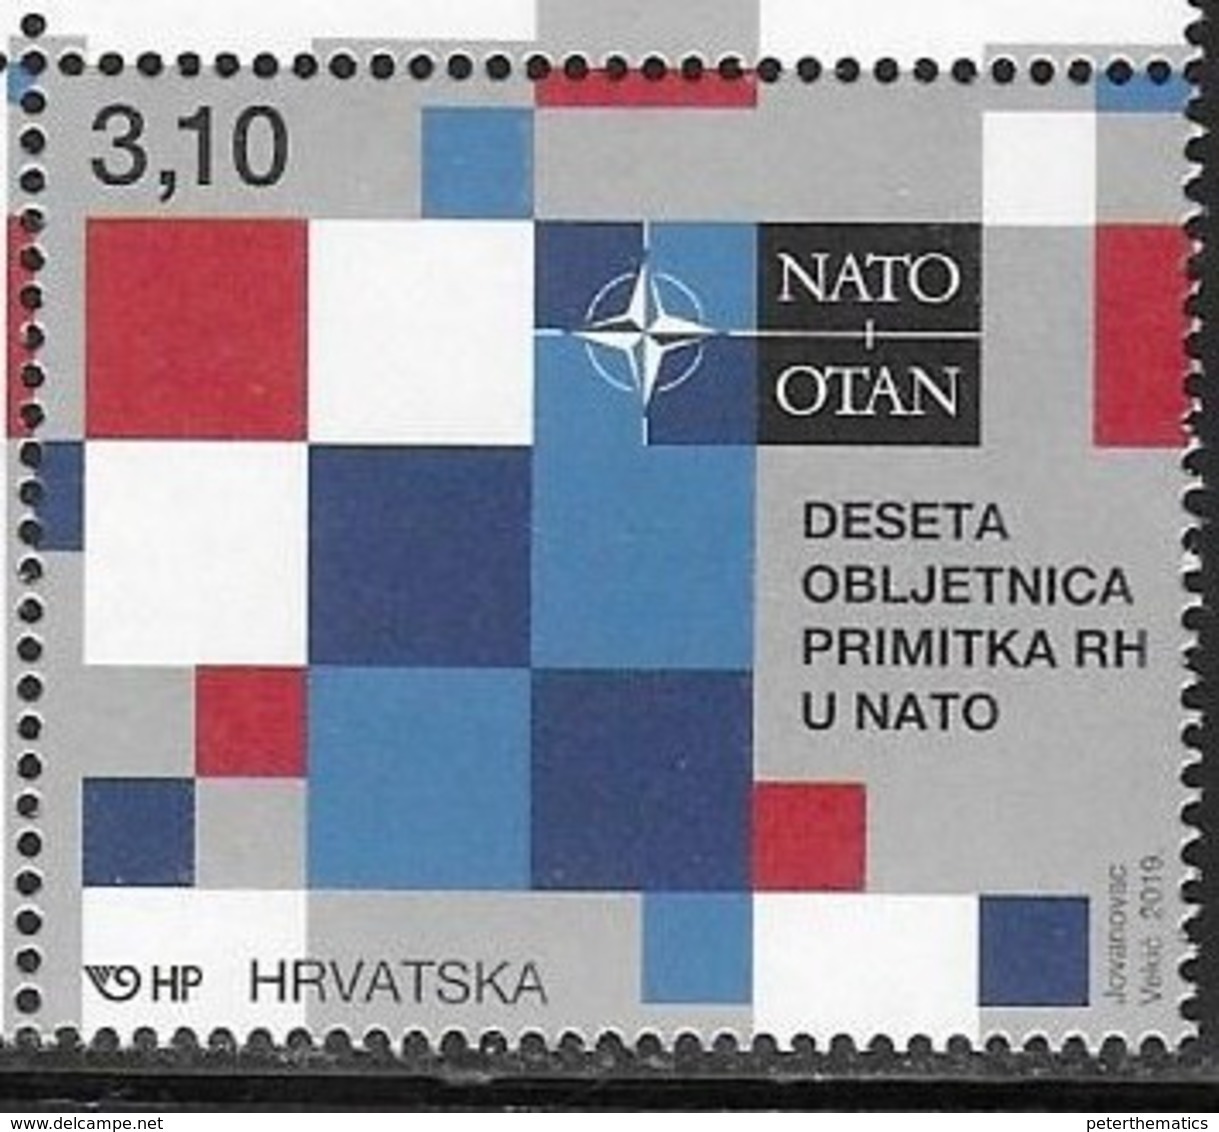 CROATIA , 2019, MNH,NATO, MILITARY ALLIANCES,1v - NATO